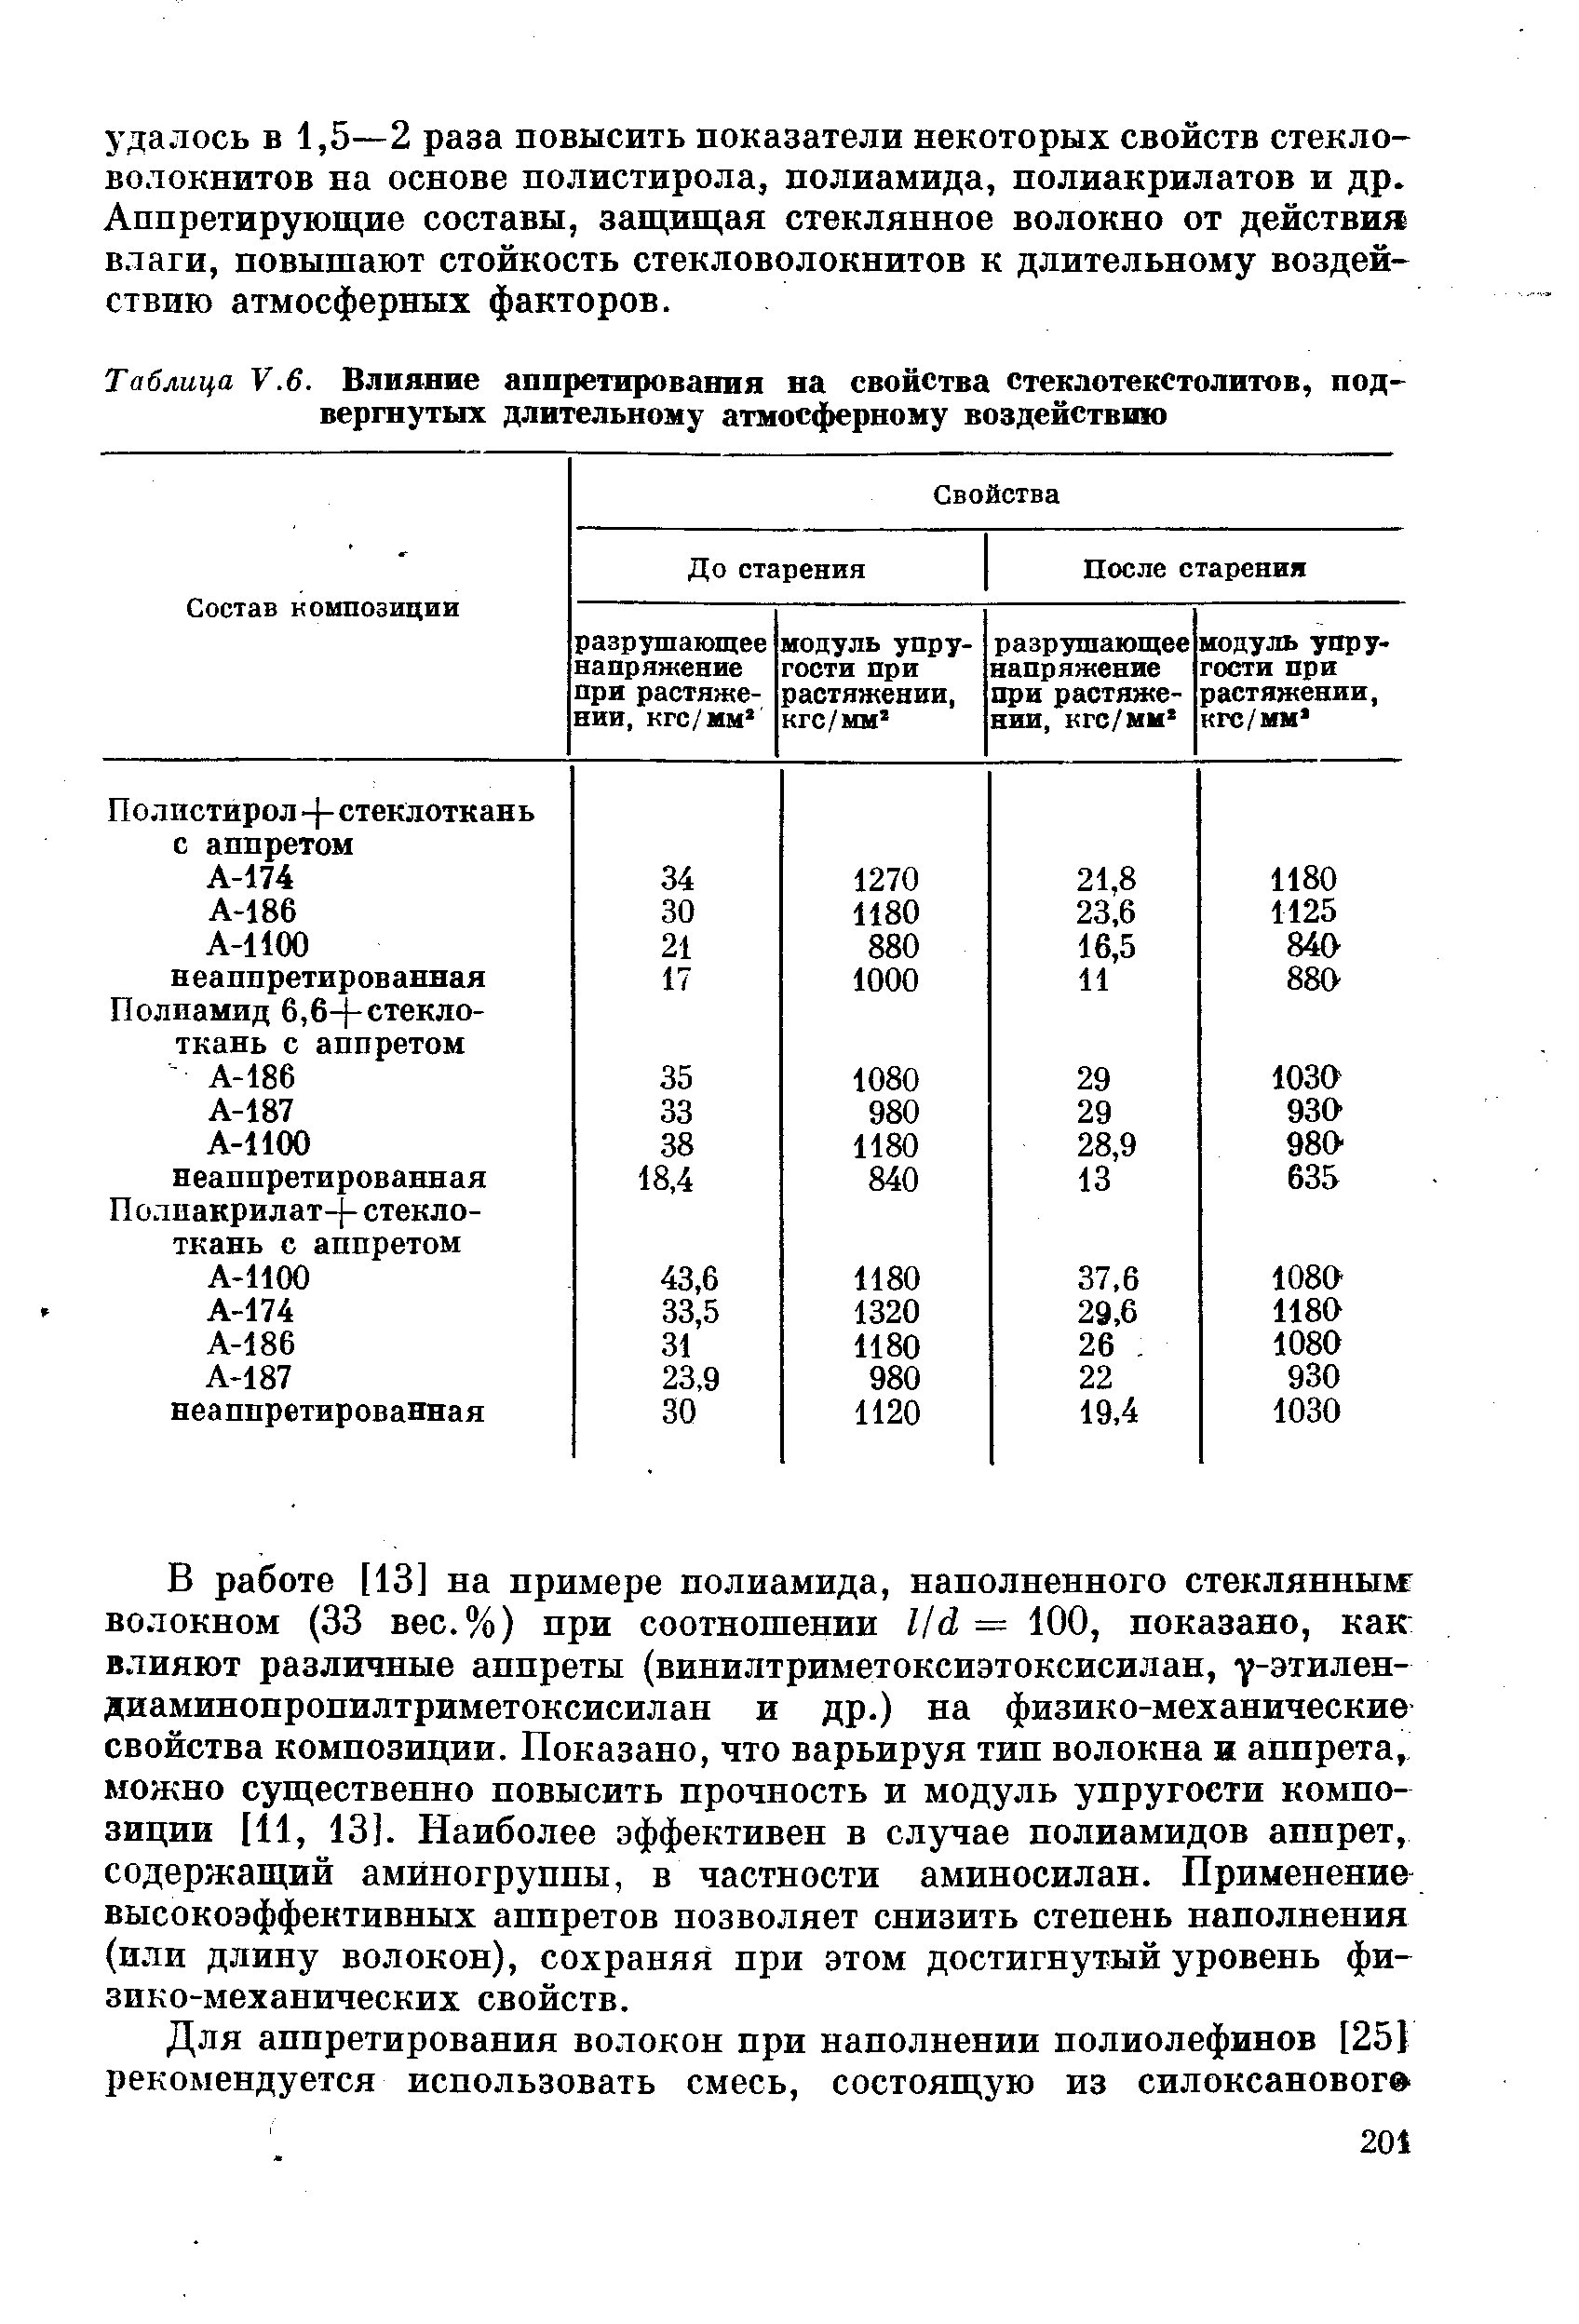 Таблица .6. Влияние аппретирования на свойства стеклотекстолитов, подвергнутых длительному атмосферному воздействию
